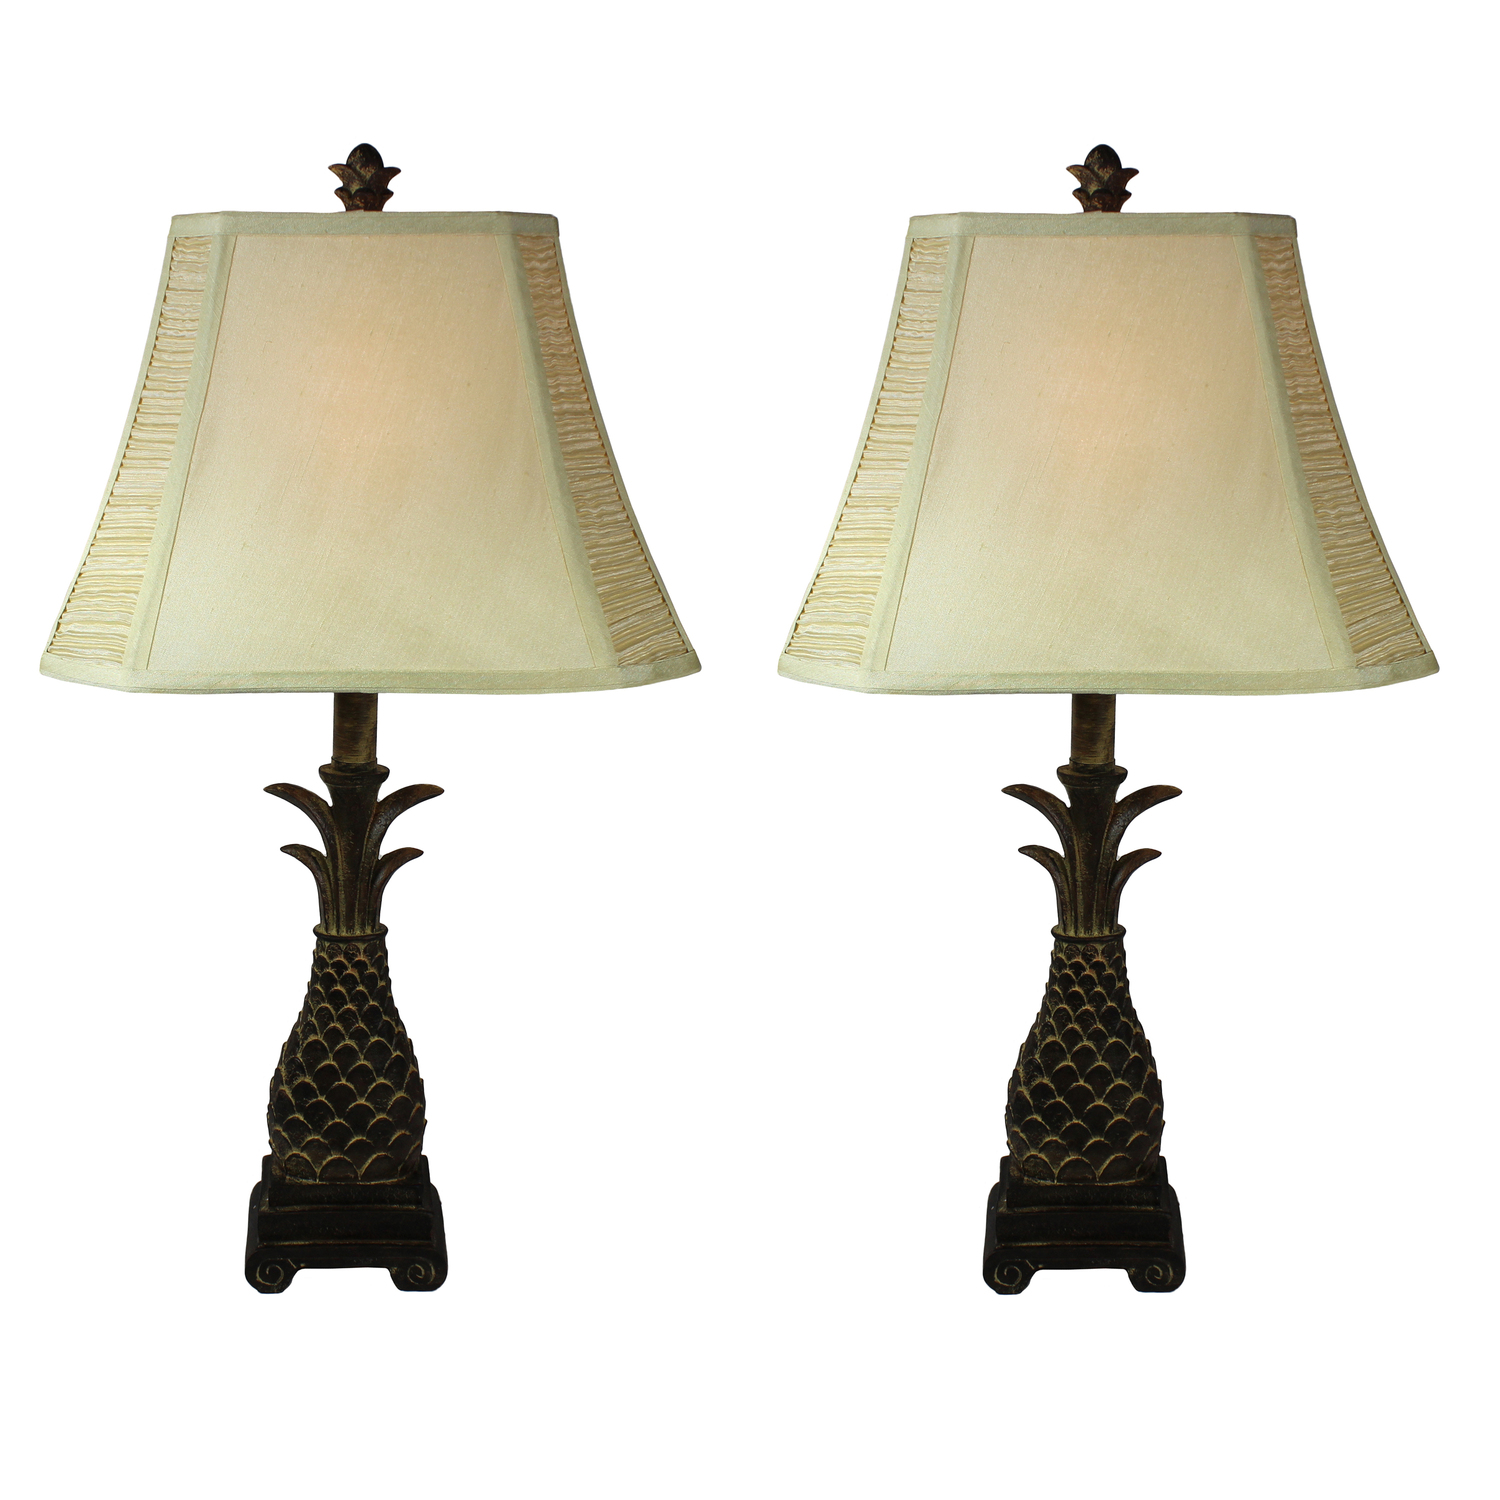 Detail Ebay Pineapple Lamp Nomer 16